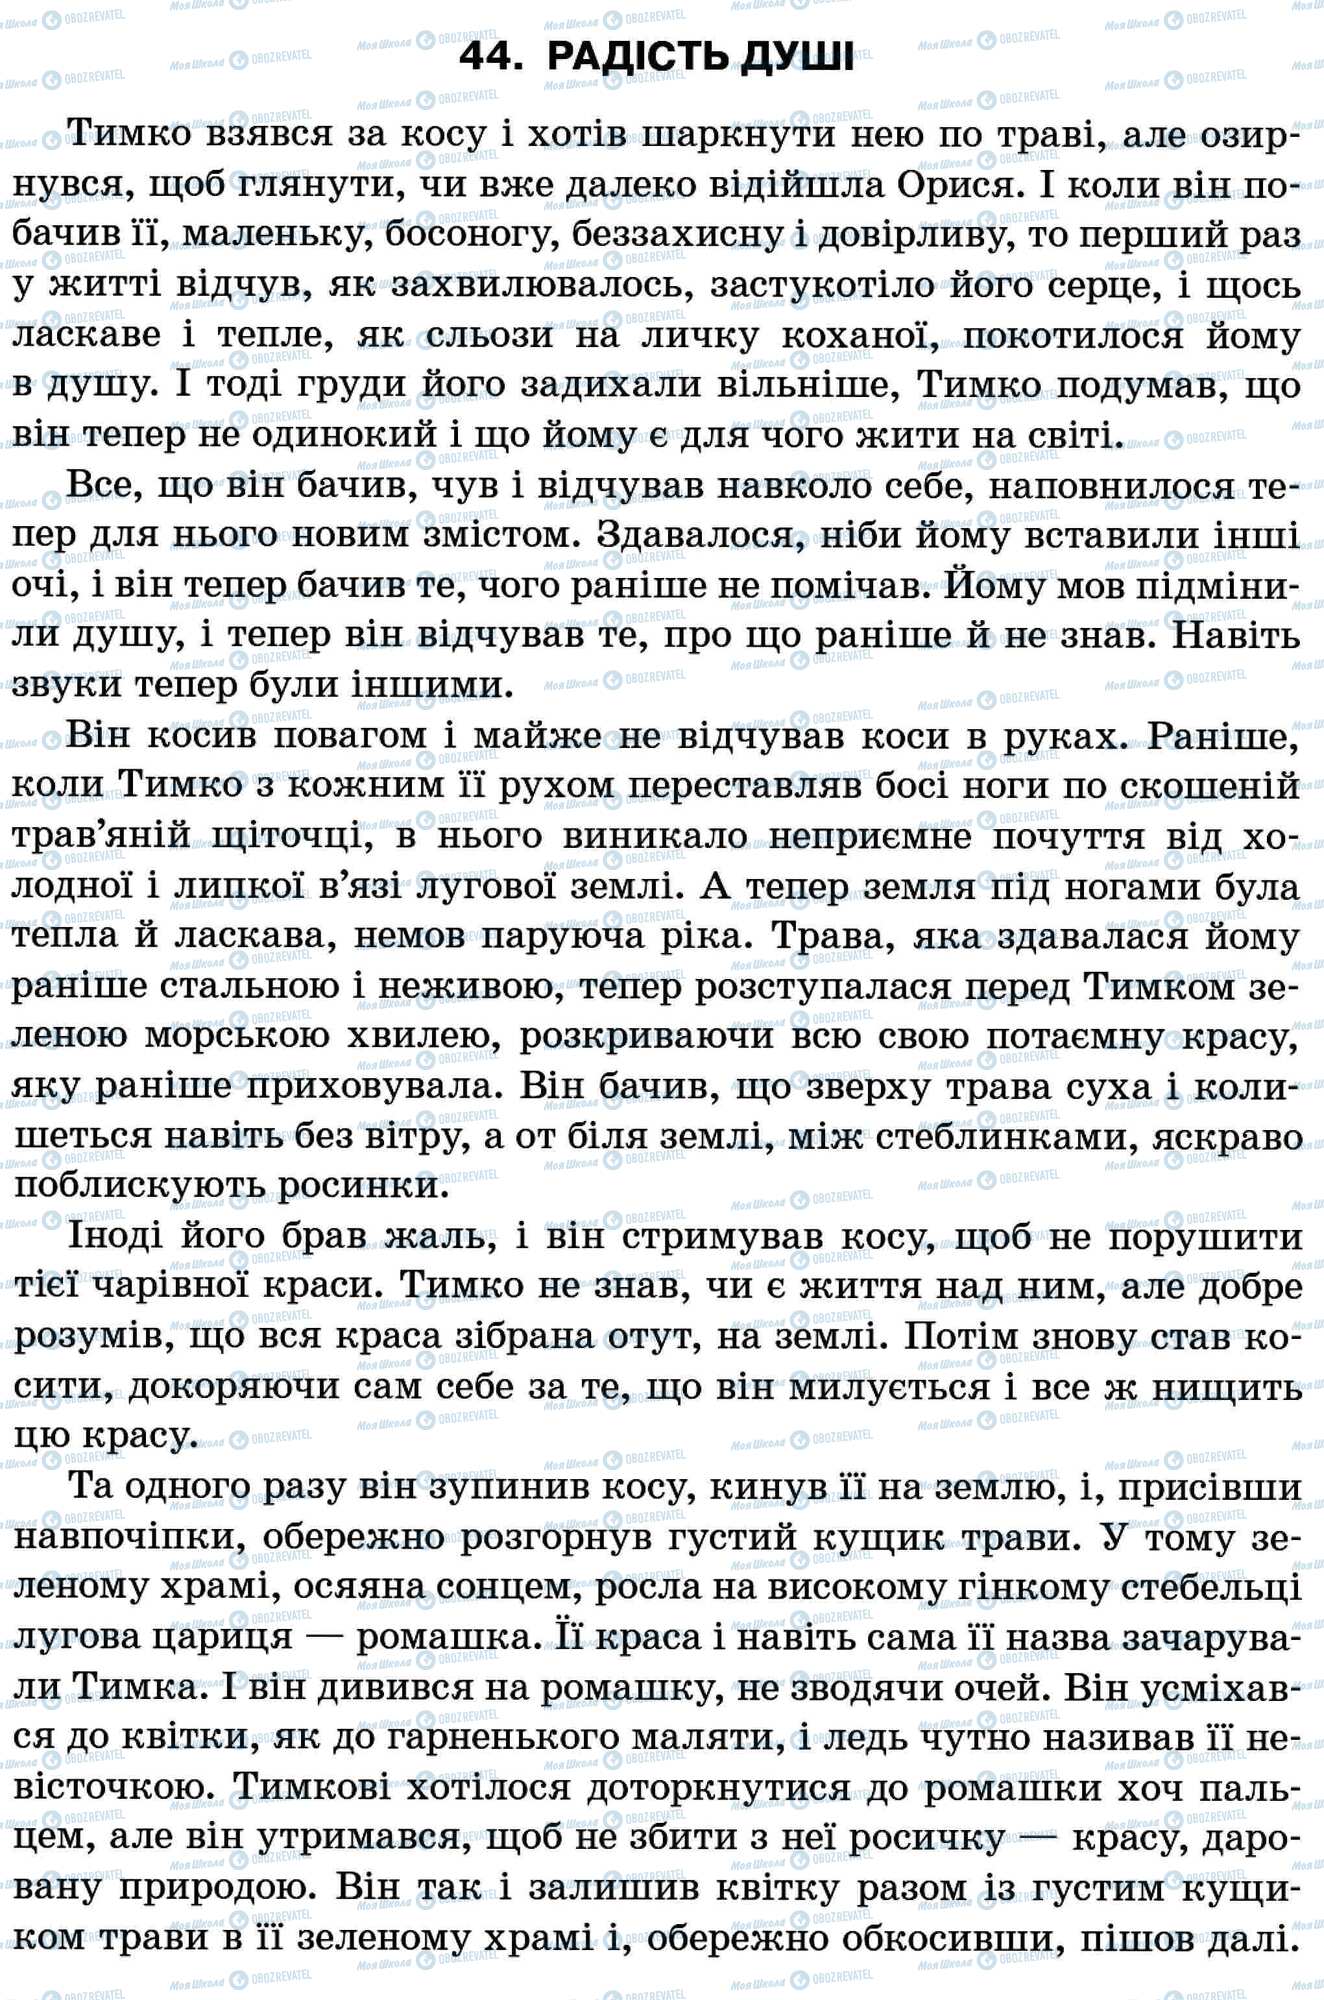 ДПА Укр мова 11 класс страница 44. Радість душі